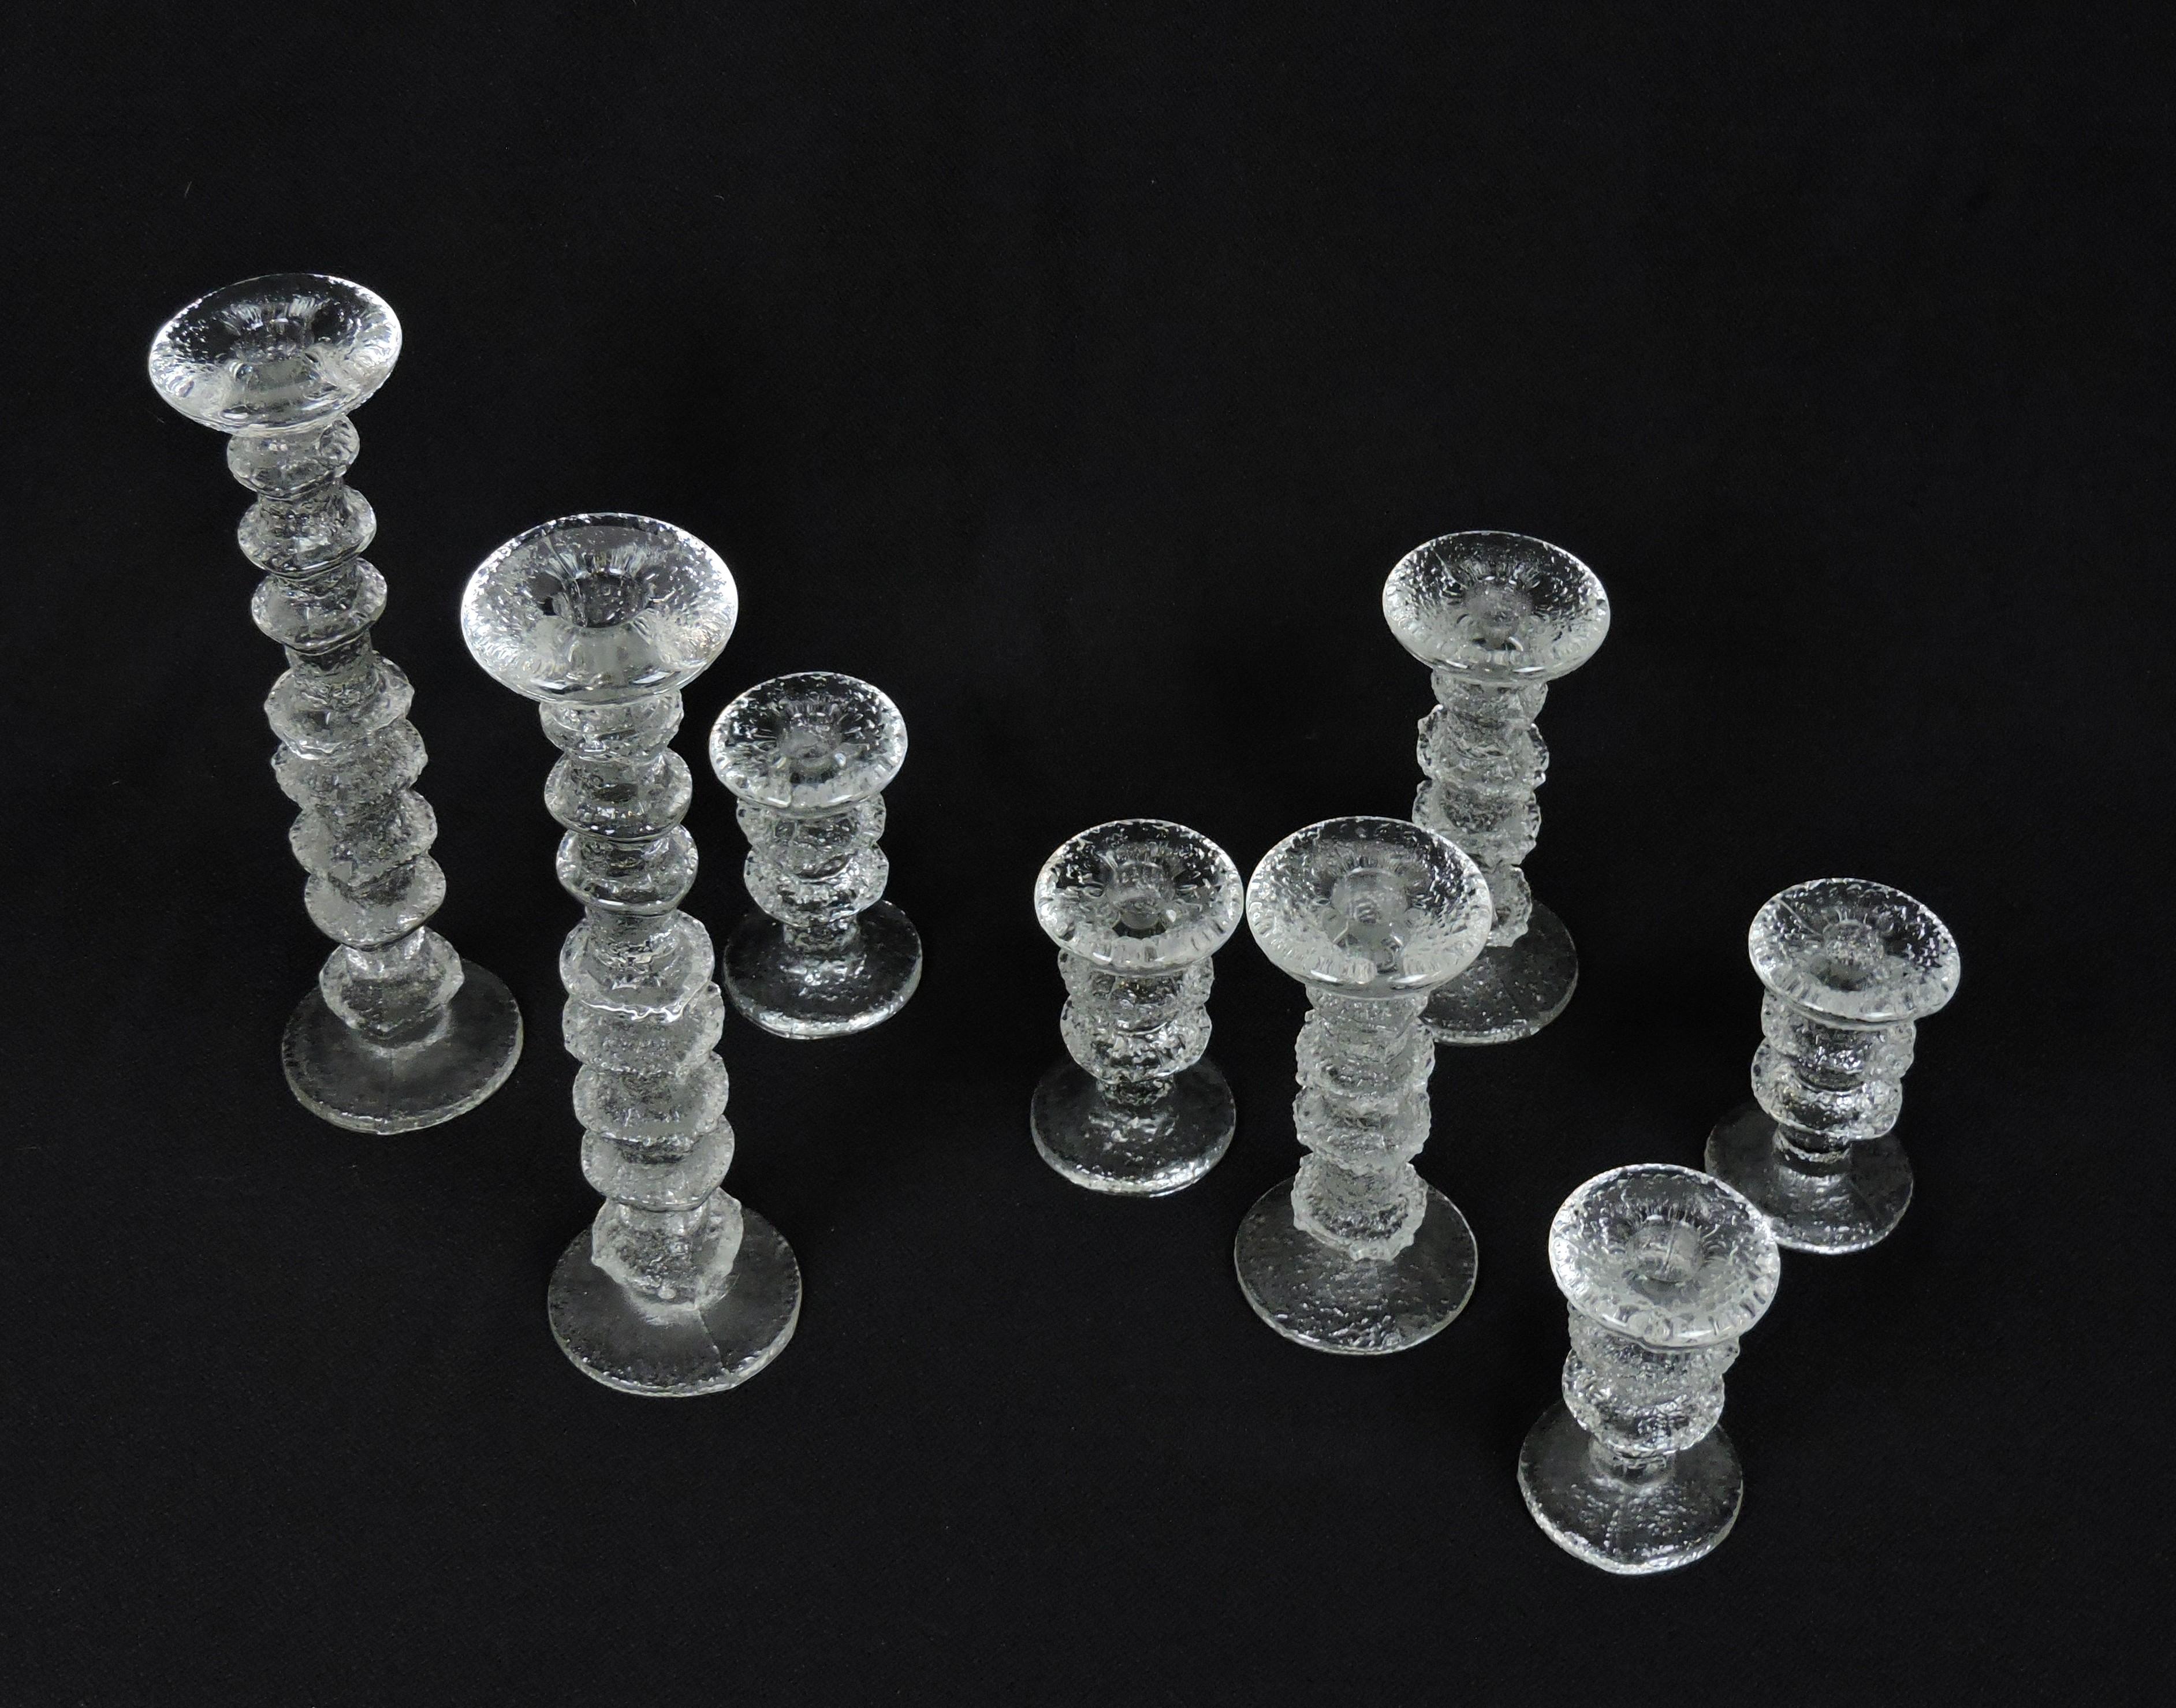 Wunderschöner Satz von 8 Festivo-Glaskerzenhaltern, entworfen von Timo Sarpaneva und hergestellt in Finnland von Iittala. Dieses Set enthält zwei 12 5/8 Zoll hohe (8 Ringe), zwei 7 1/8 Zoll hohe (4 Ringe) und vier 4 3/4 Zoll hohe (2 Ringe)